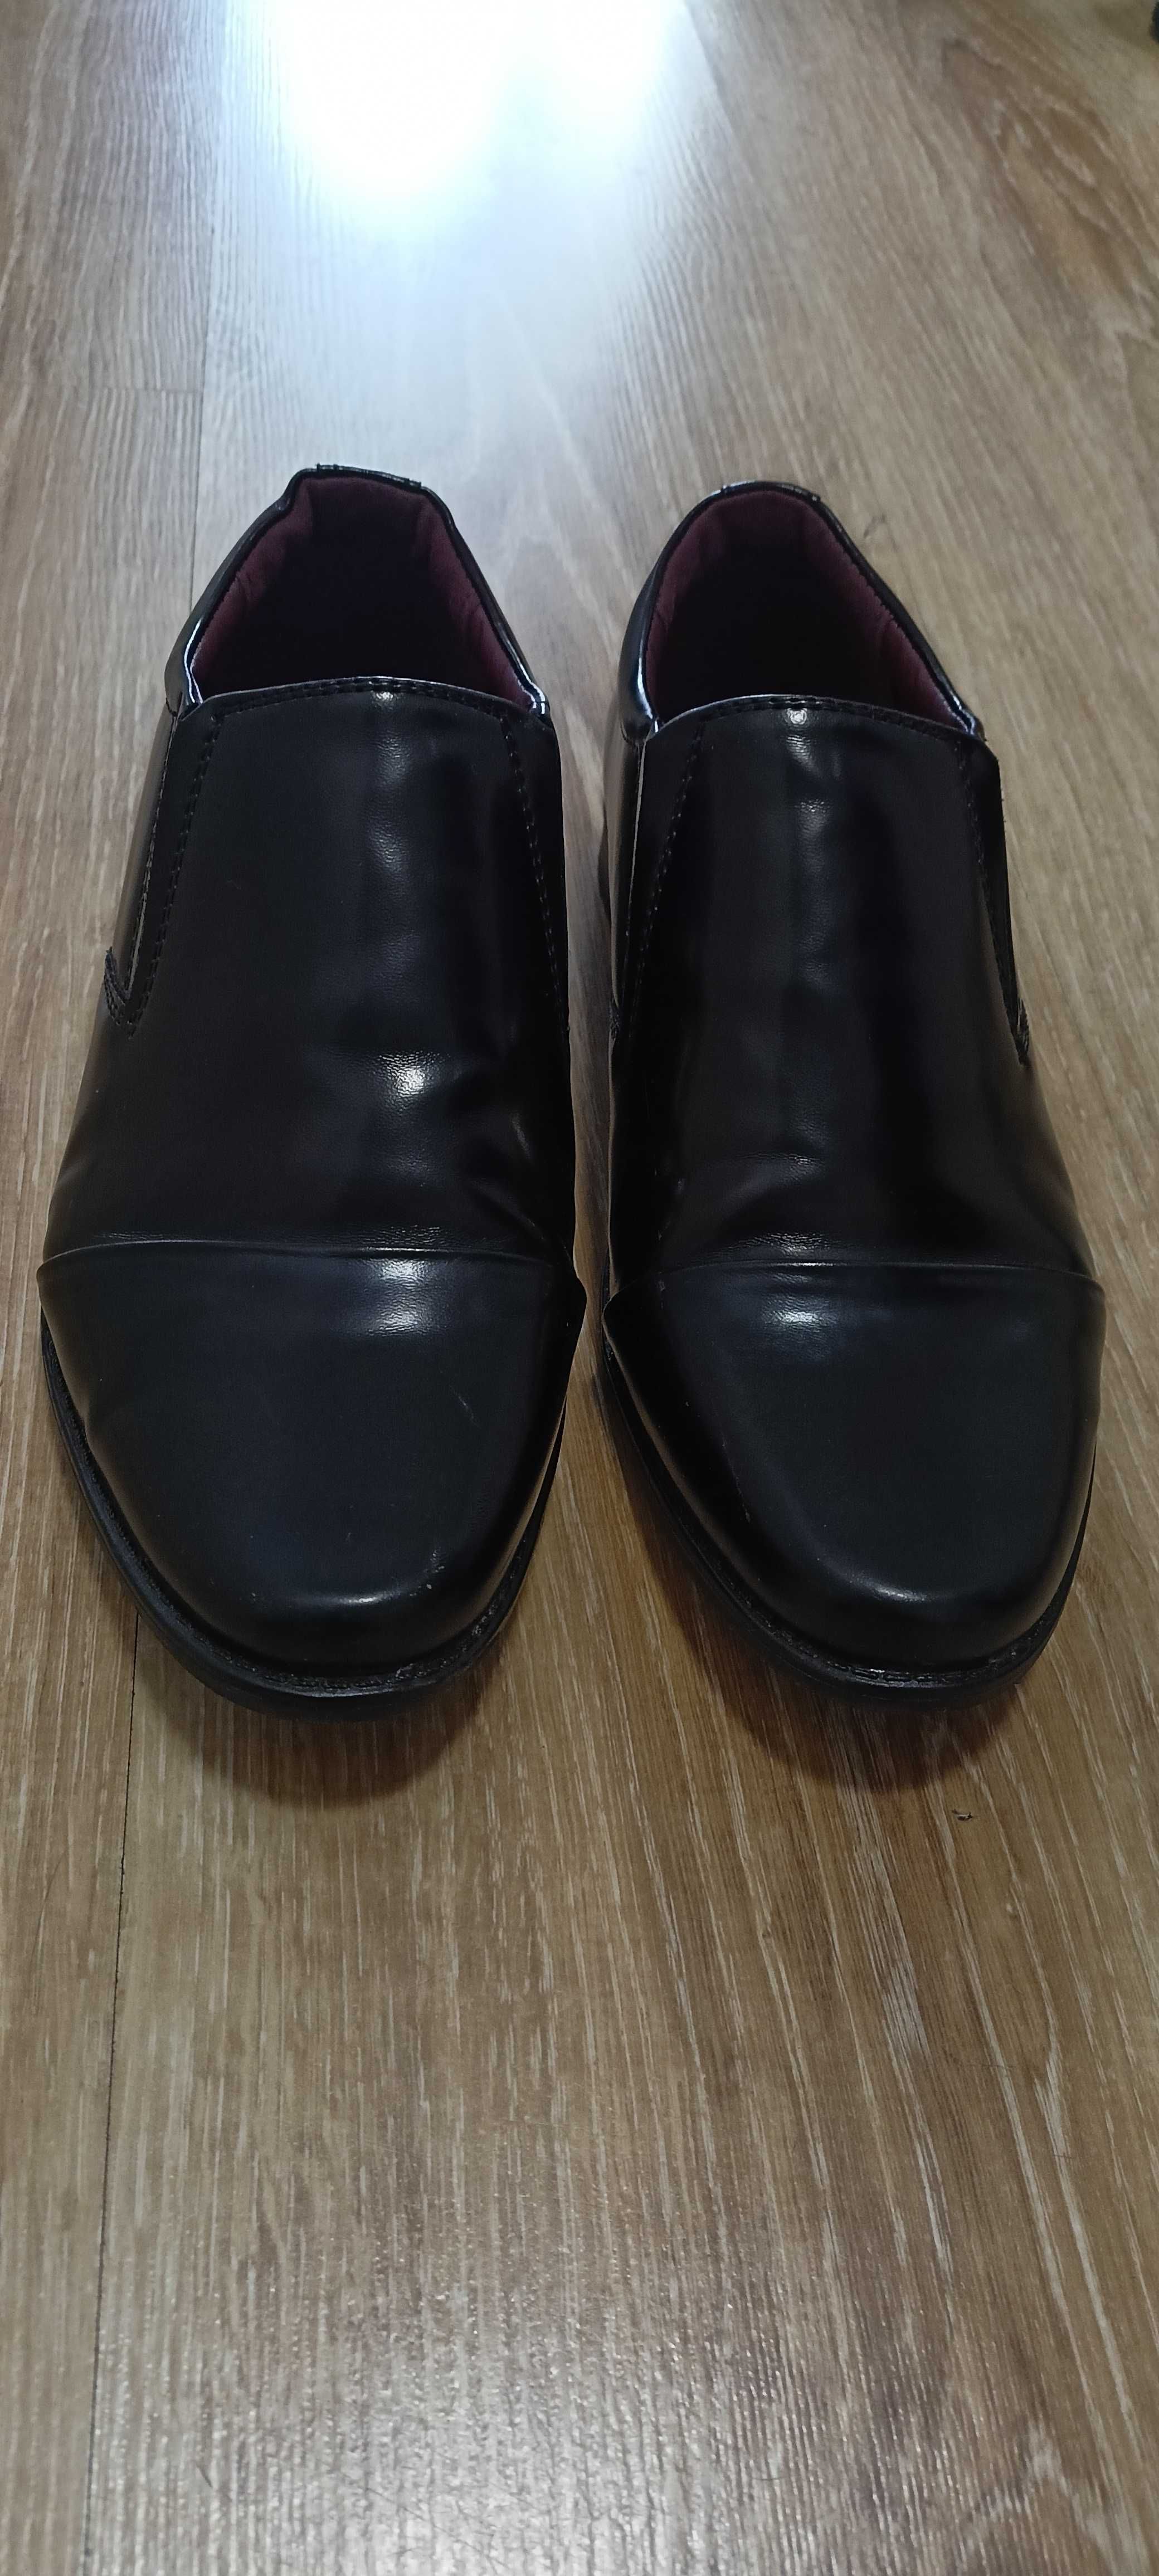 Buty chłopięce czarne eleganckie, komunia, rozmiar 35